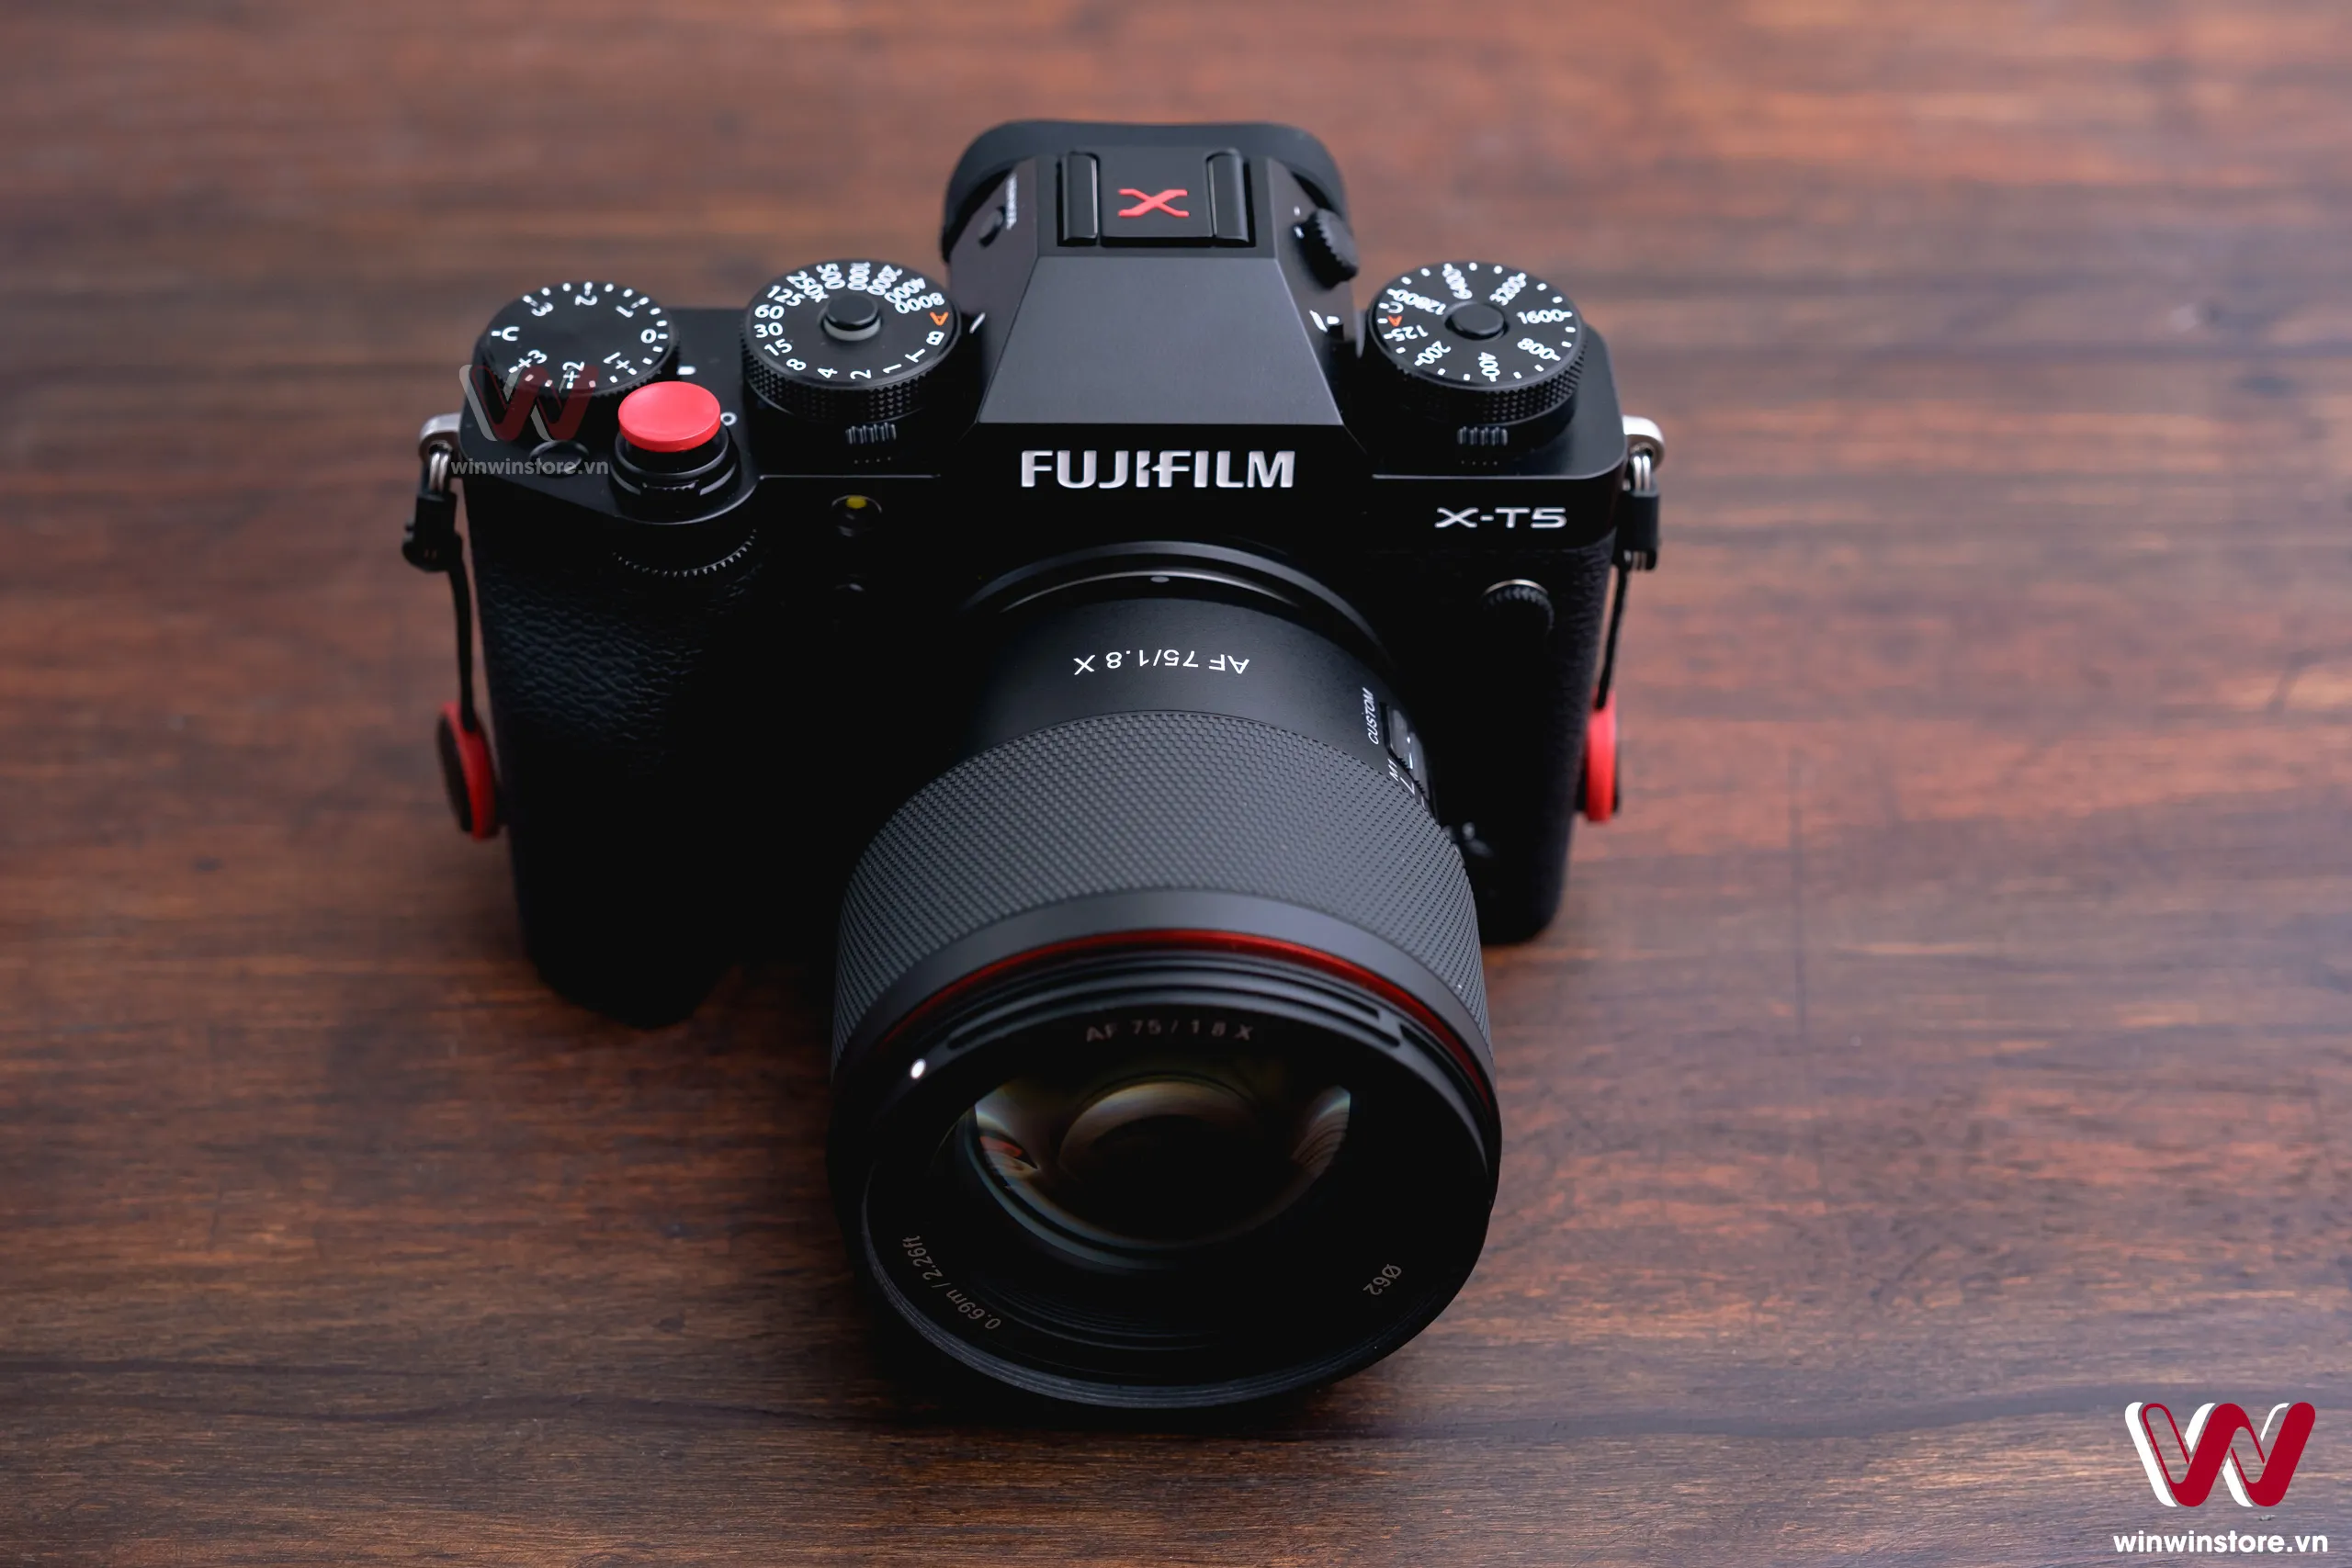 Trên tay ống kính Samyang 75mm F1.8 cho Fujifilm X: Gọn nhẹ, chống chịu thời tiết, giá 9.9 triệu